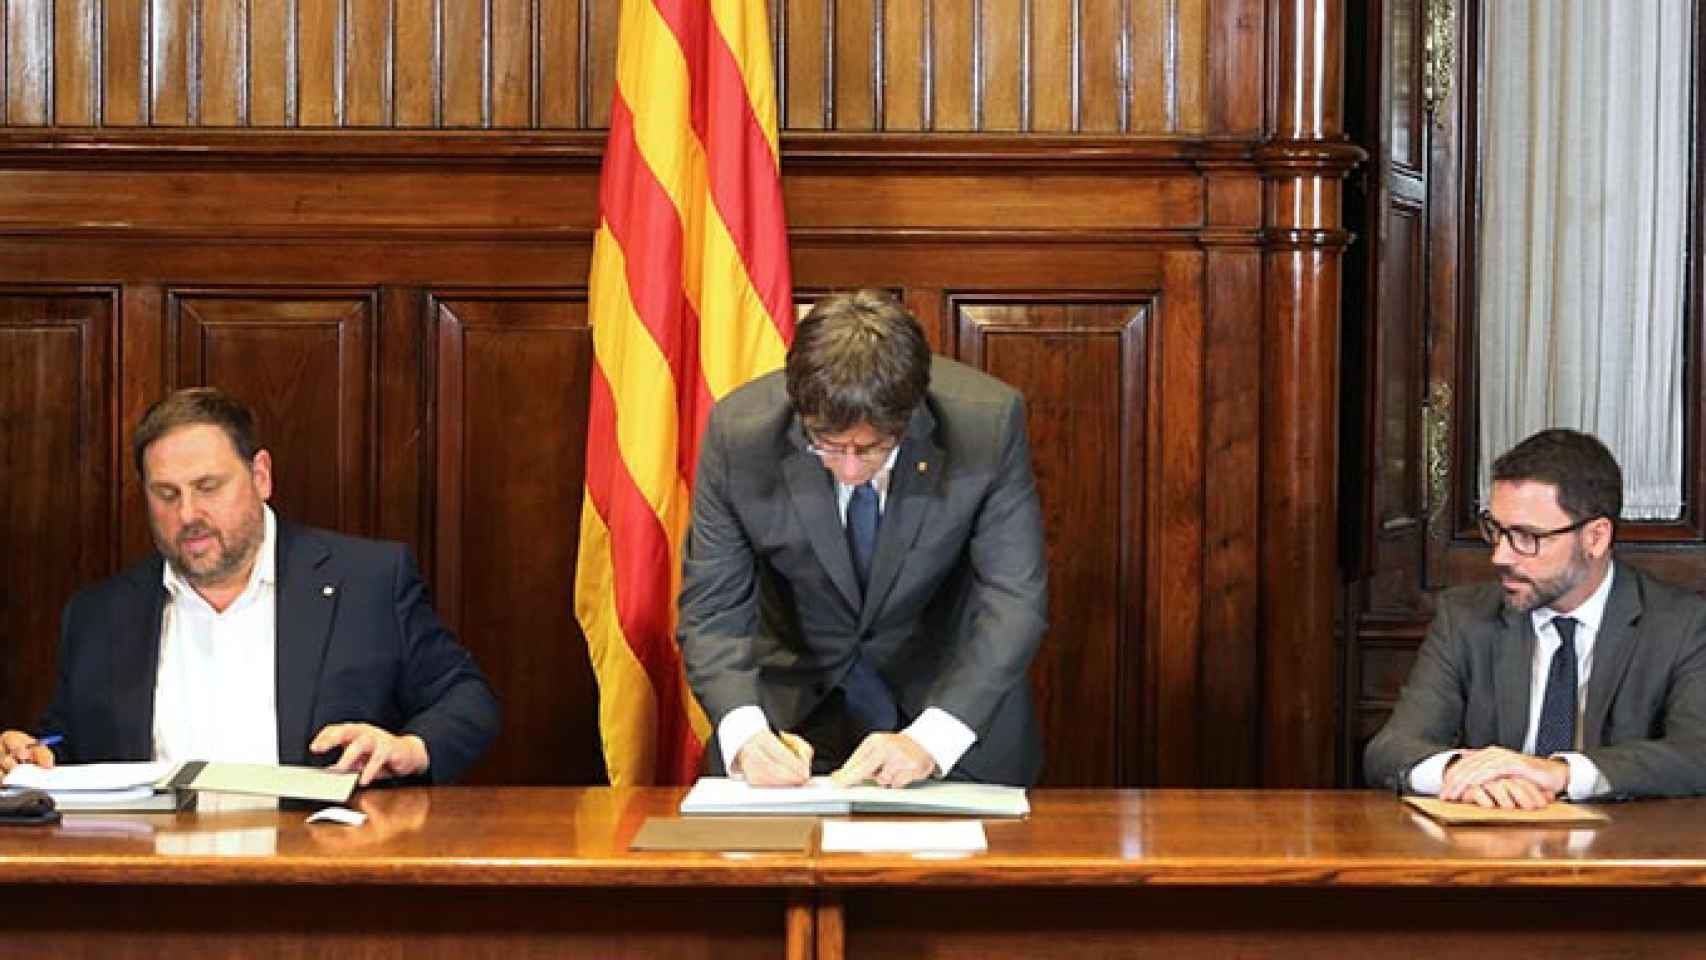 Campaña: El presidente de la Generalitat, Carles Puigdemont, firma el decreto de convocatoria del referéndum junto al vicepresidente Oriol Junqueras y el secretario del Govern / RUBEN MORENO